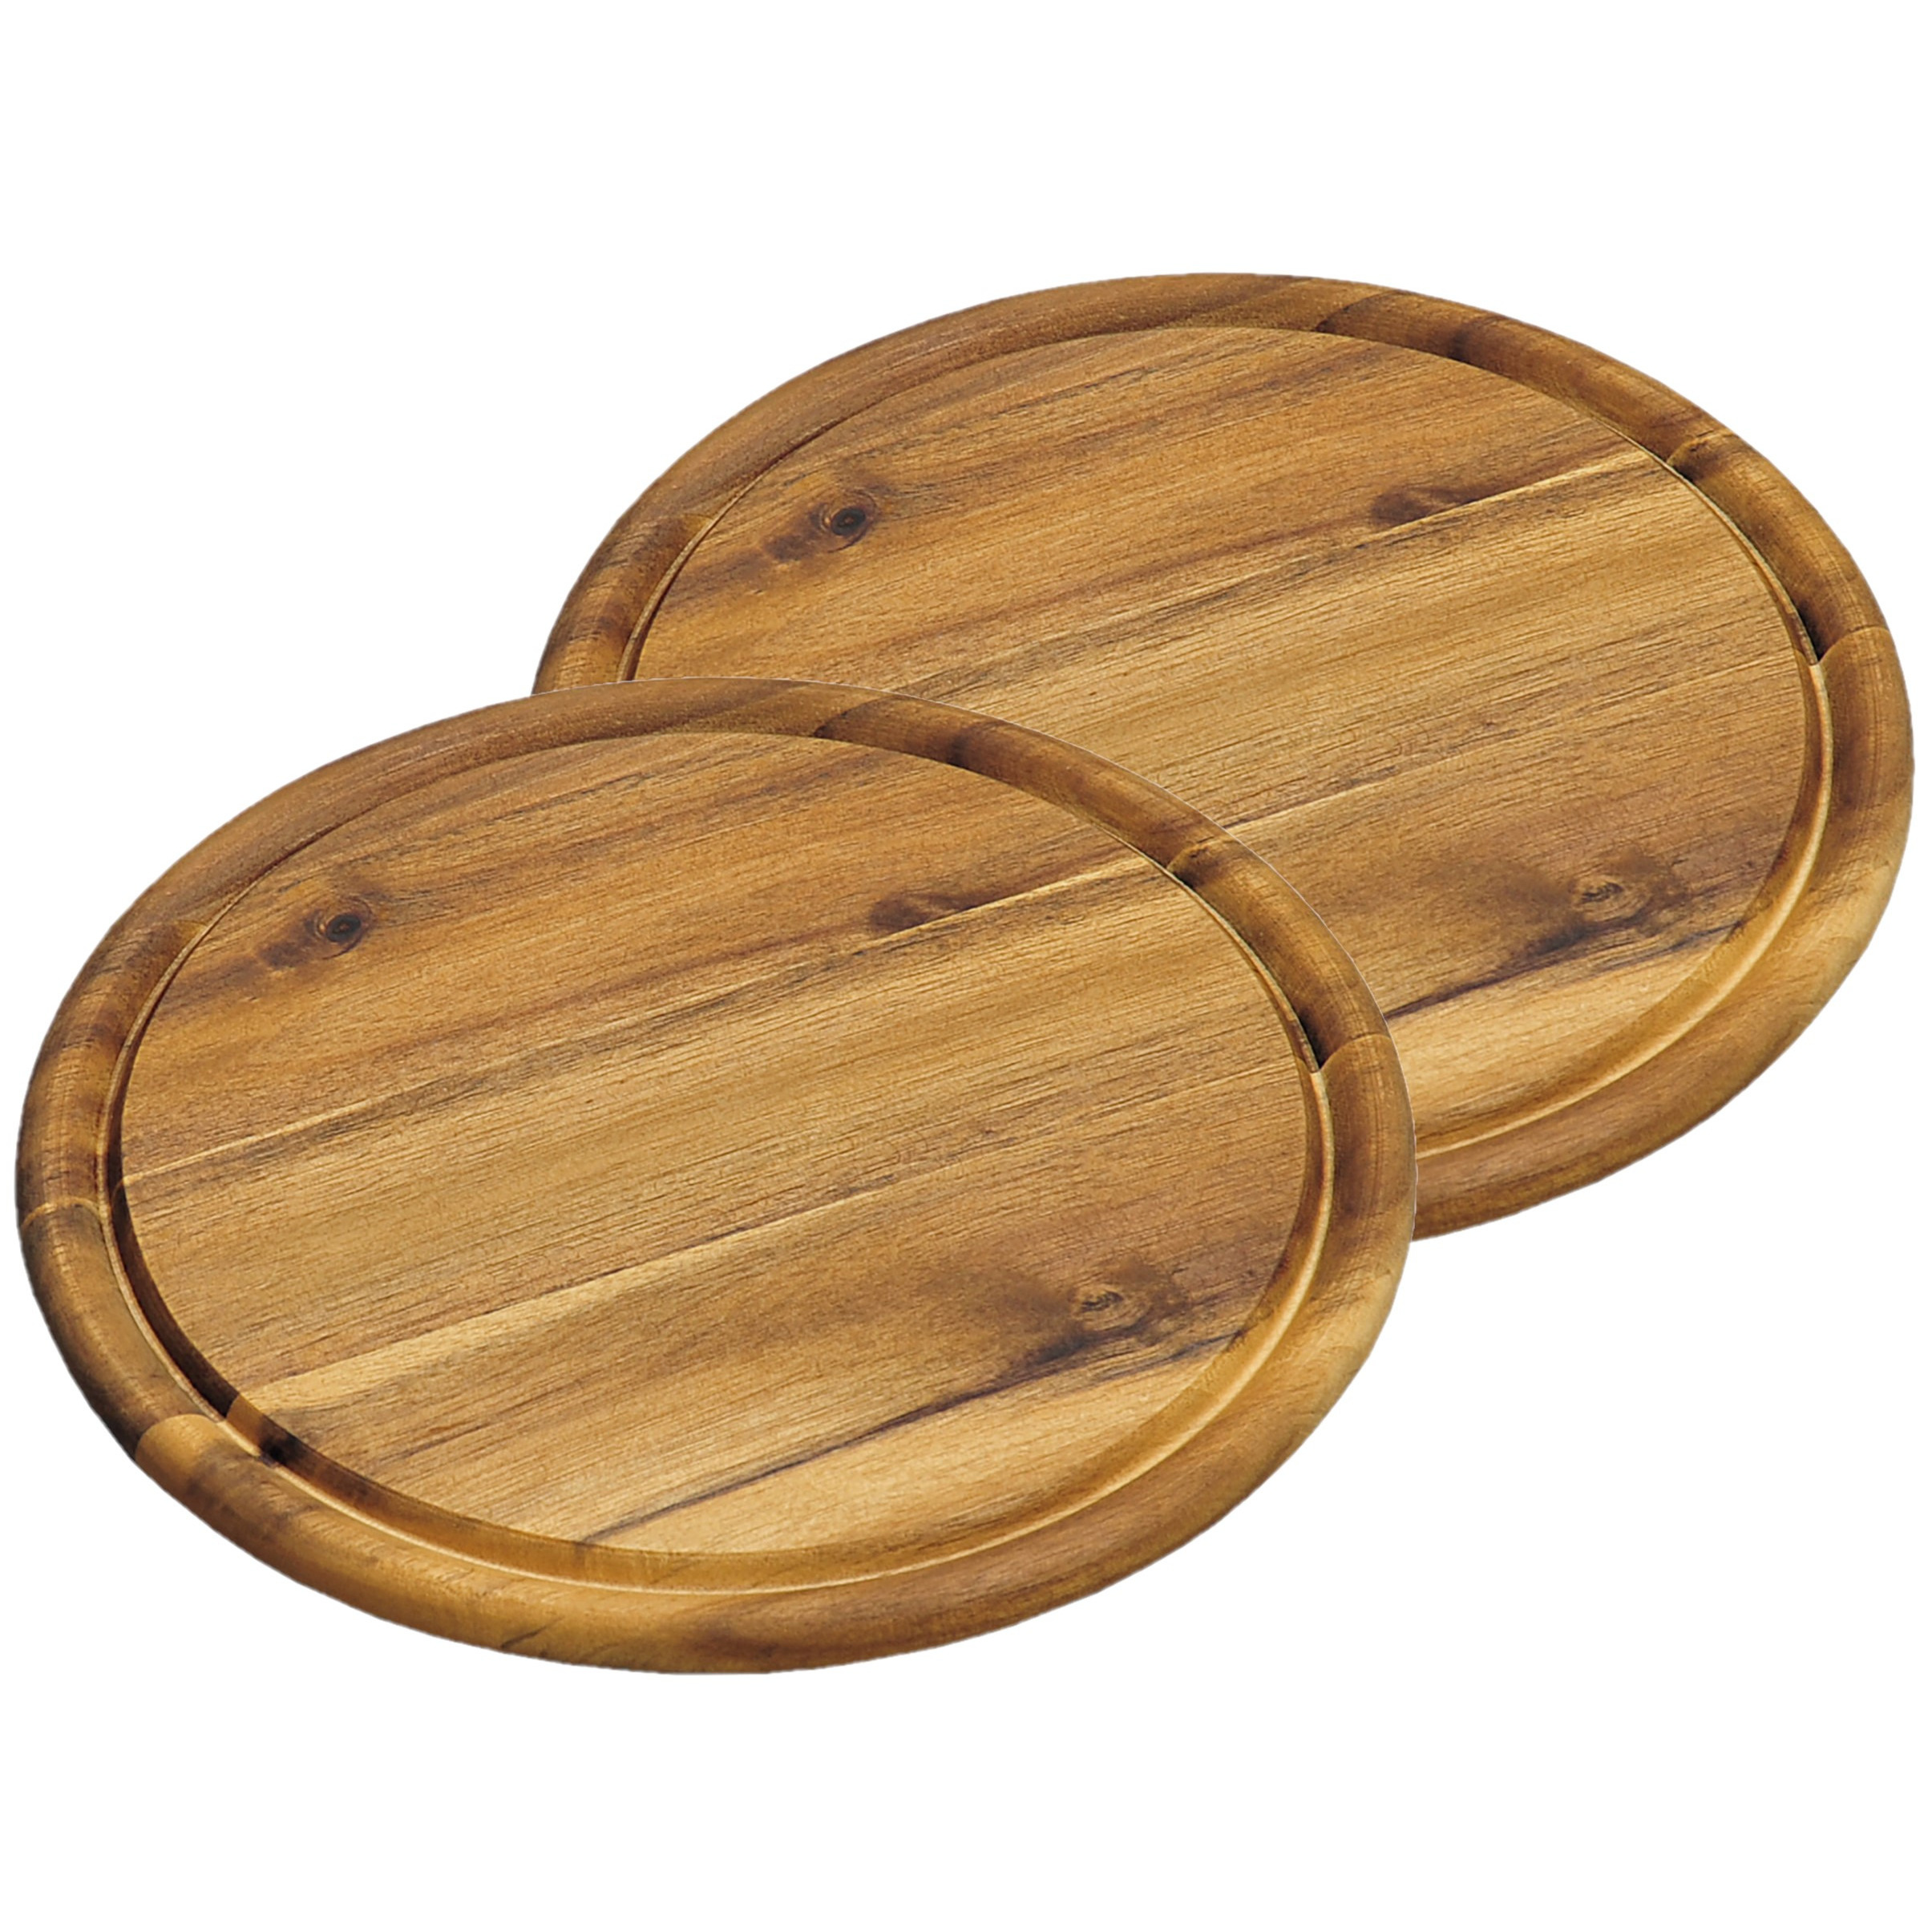 Kesper 4x stuks houten broodplanken/serveerplanken rond met sapgroef 25 cm - Snijplanken/serveerplanken van hout